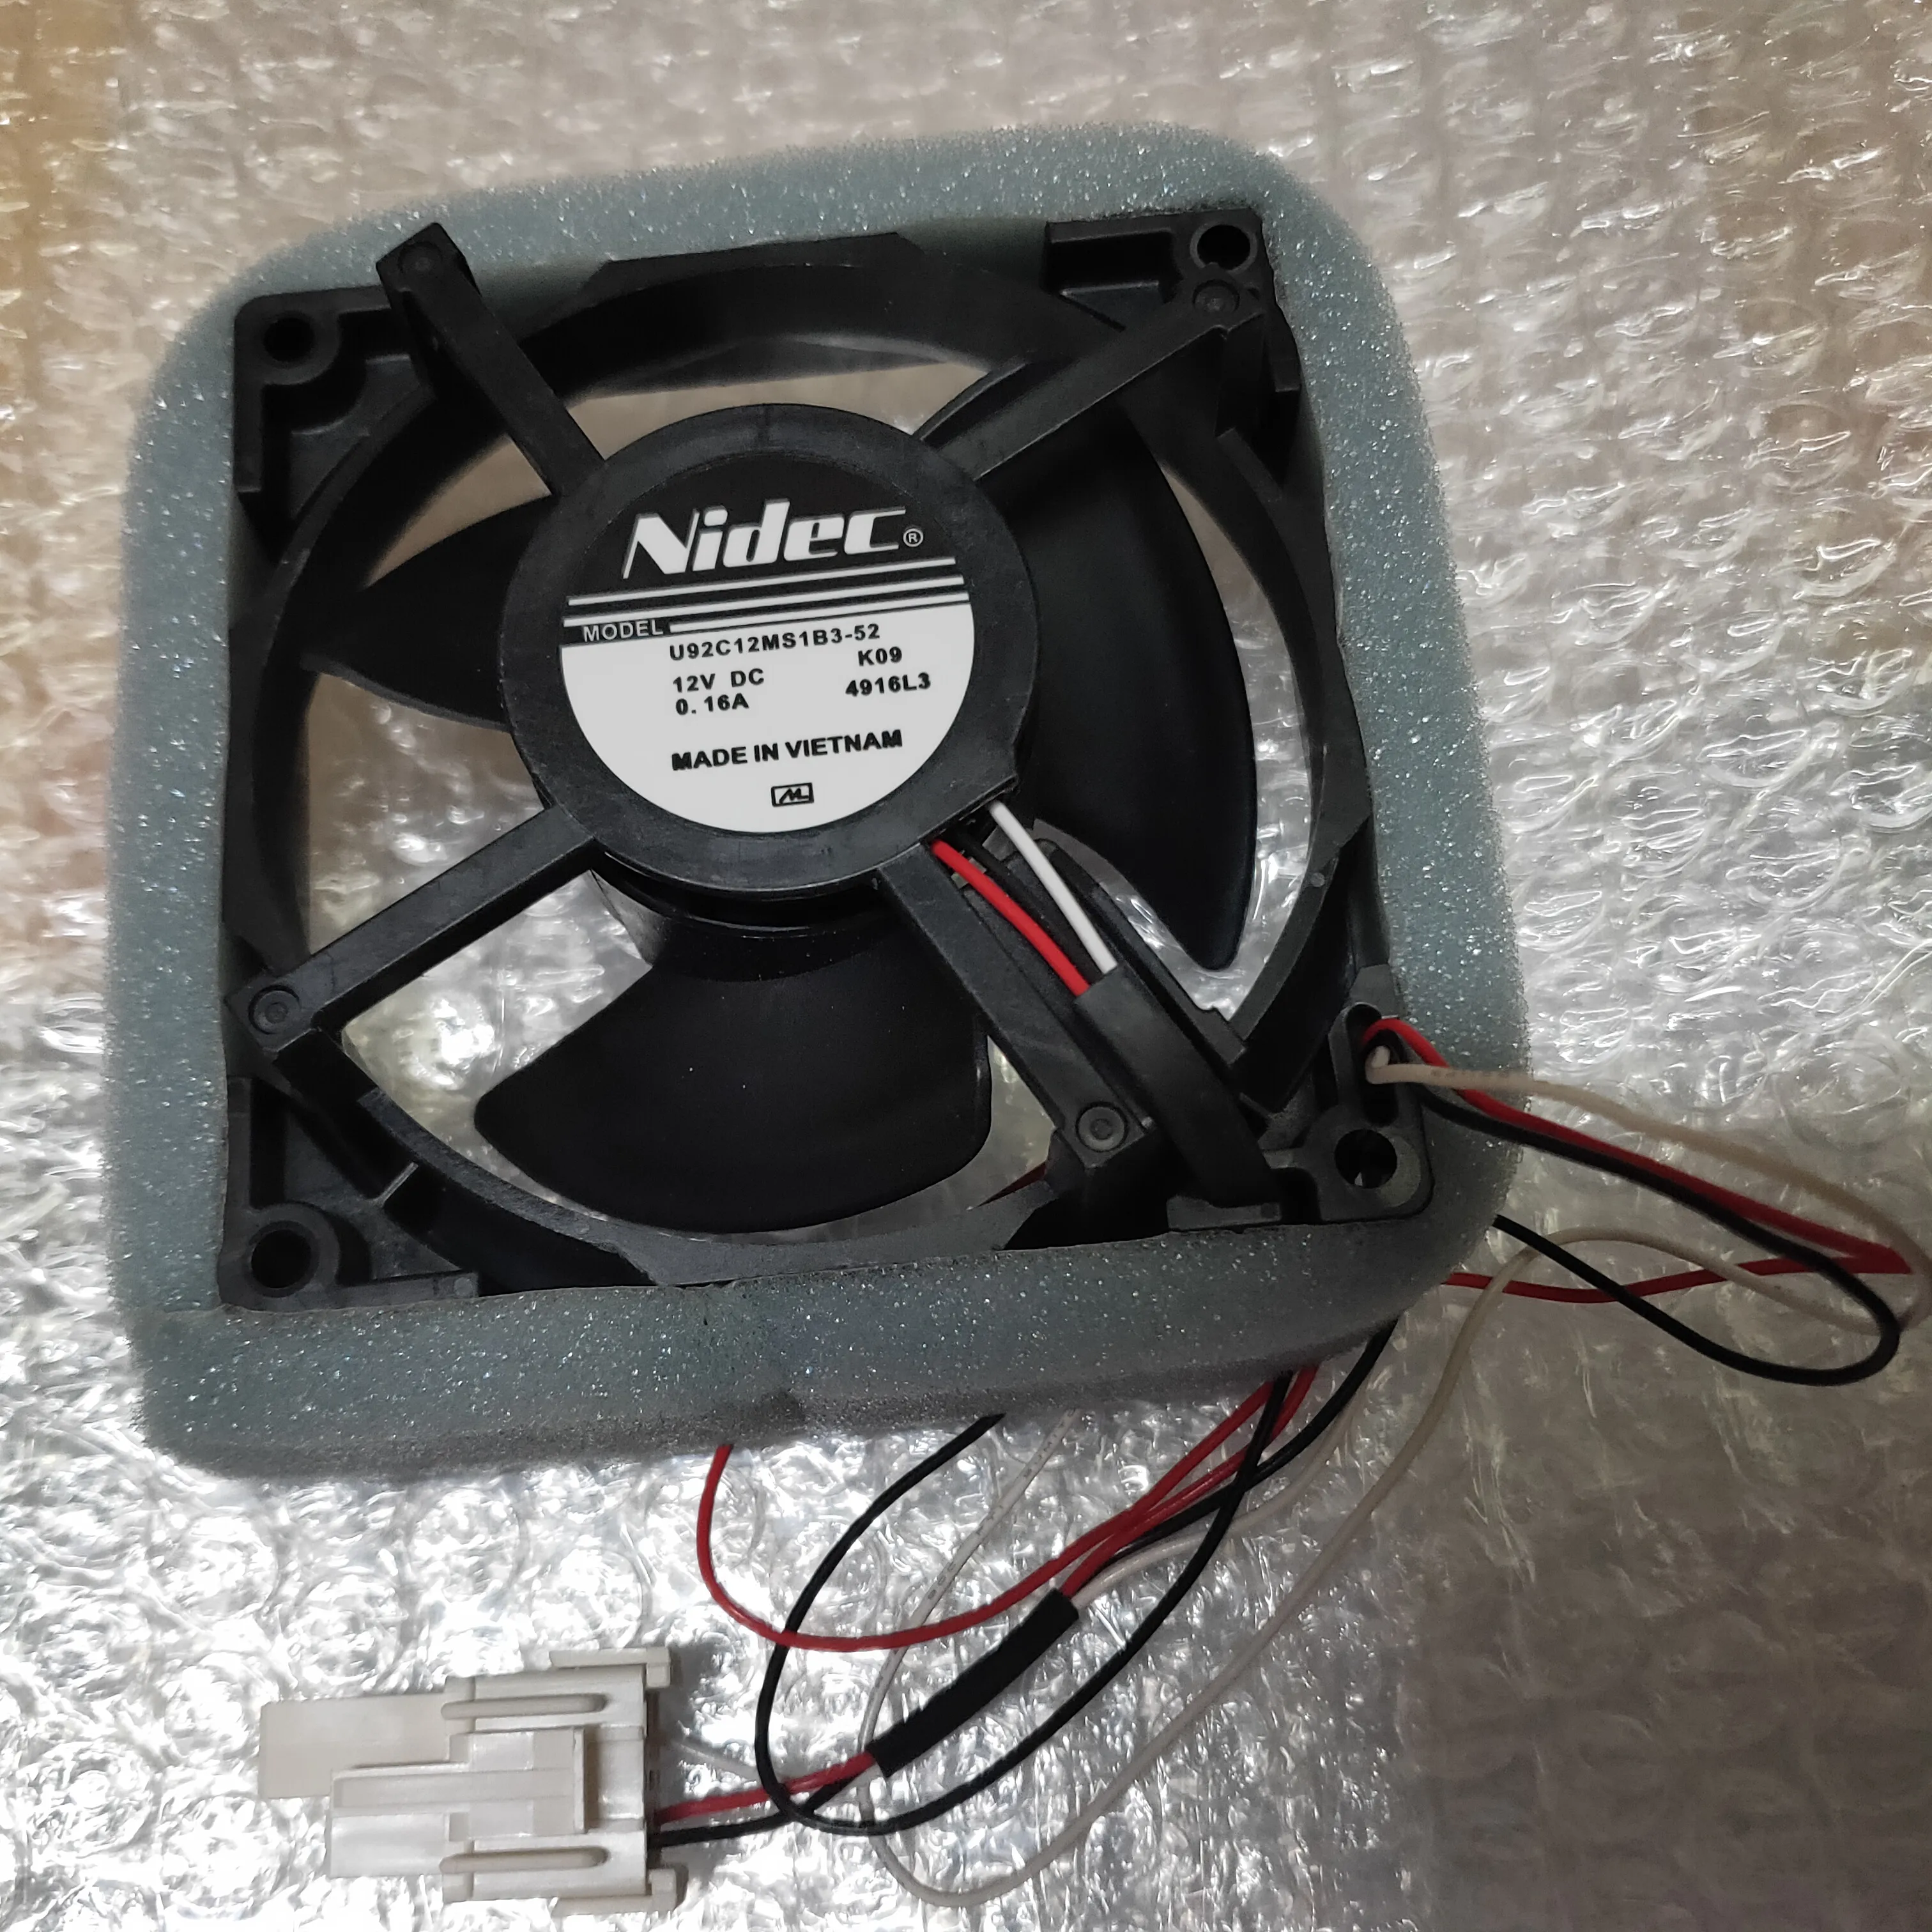 Бесплатная доставка охлаждаемого охлаждающего вентилятора Новый оригинал для Nidec 9cm U92C12MS1B3-52 12V 0,16A Водонепроницаемый кулер